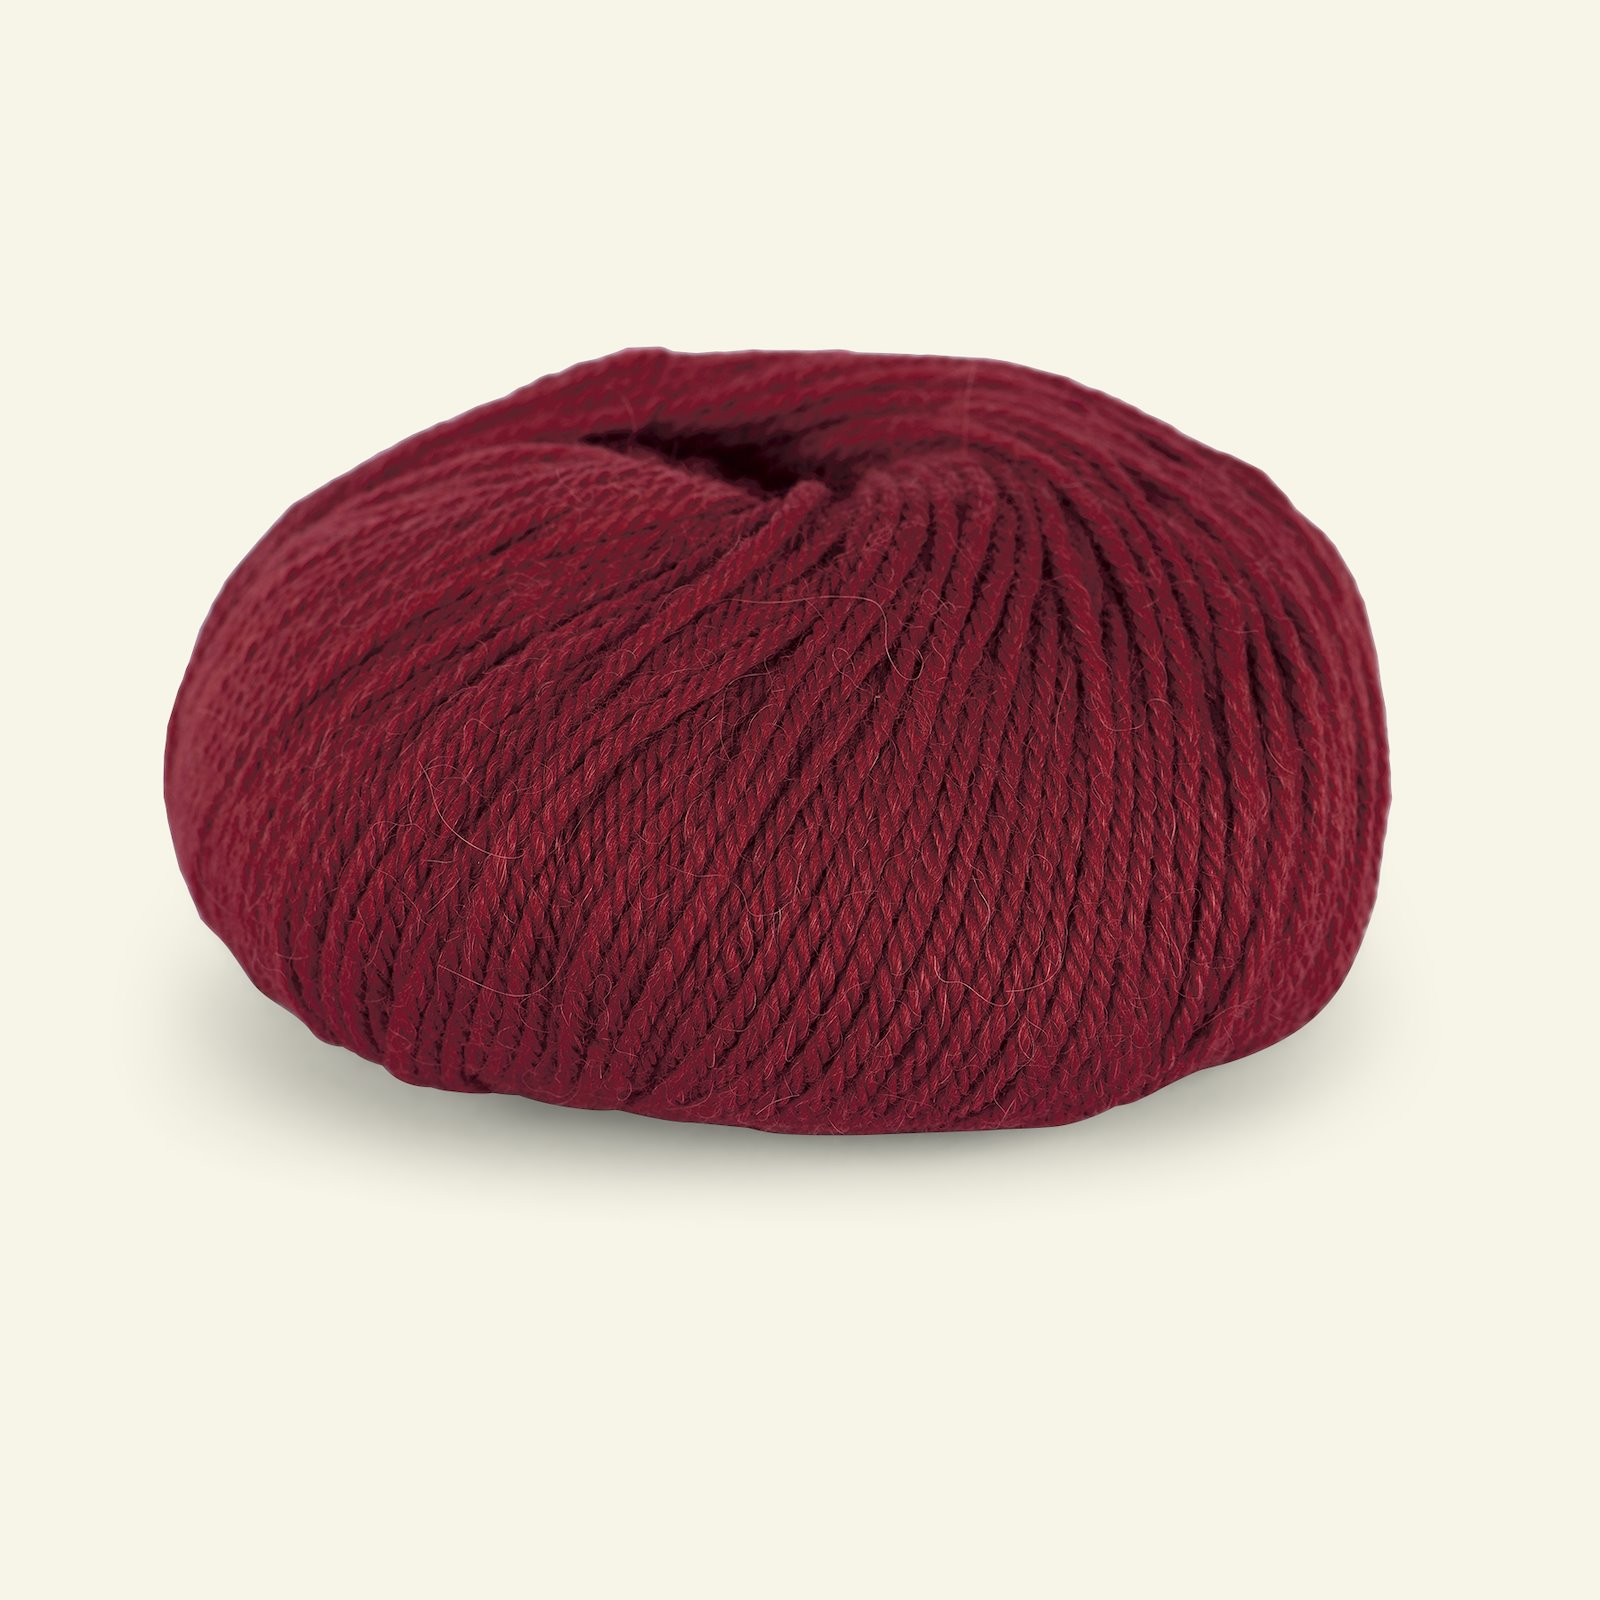 Du Store Alpakka,alpaca merino mixed yarn "Mini Sterk", dark red (819) 90000625_pack_b